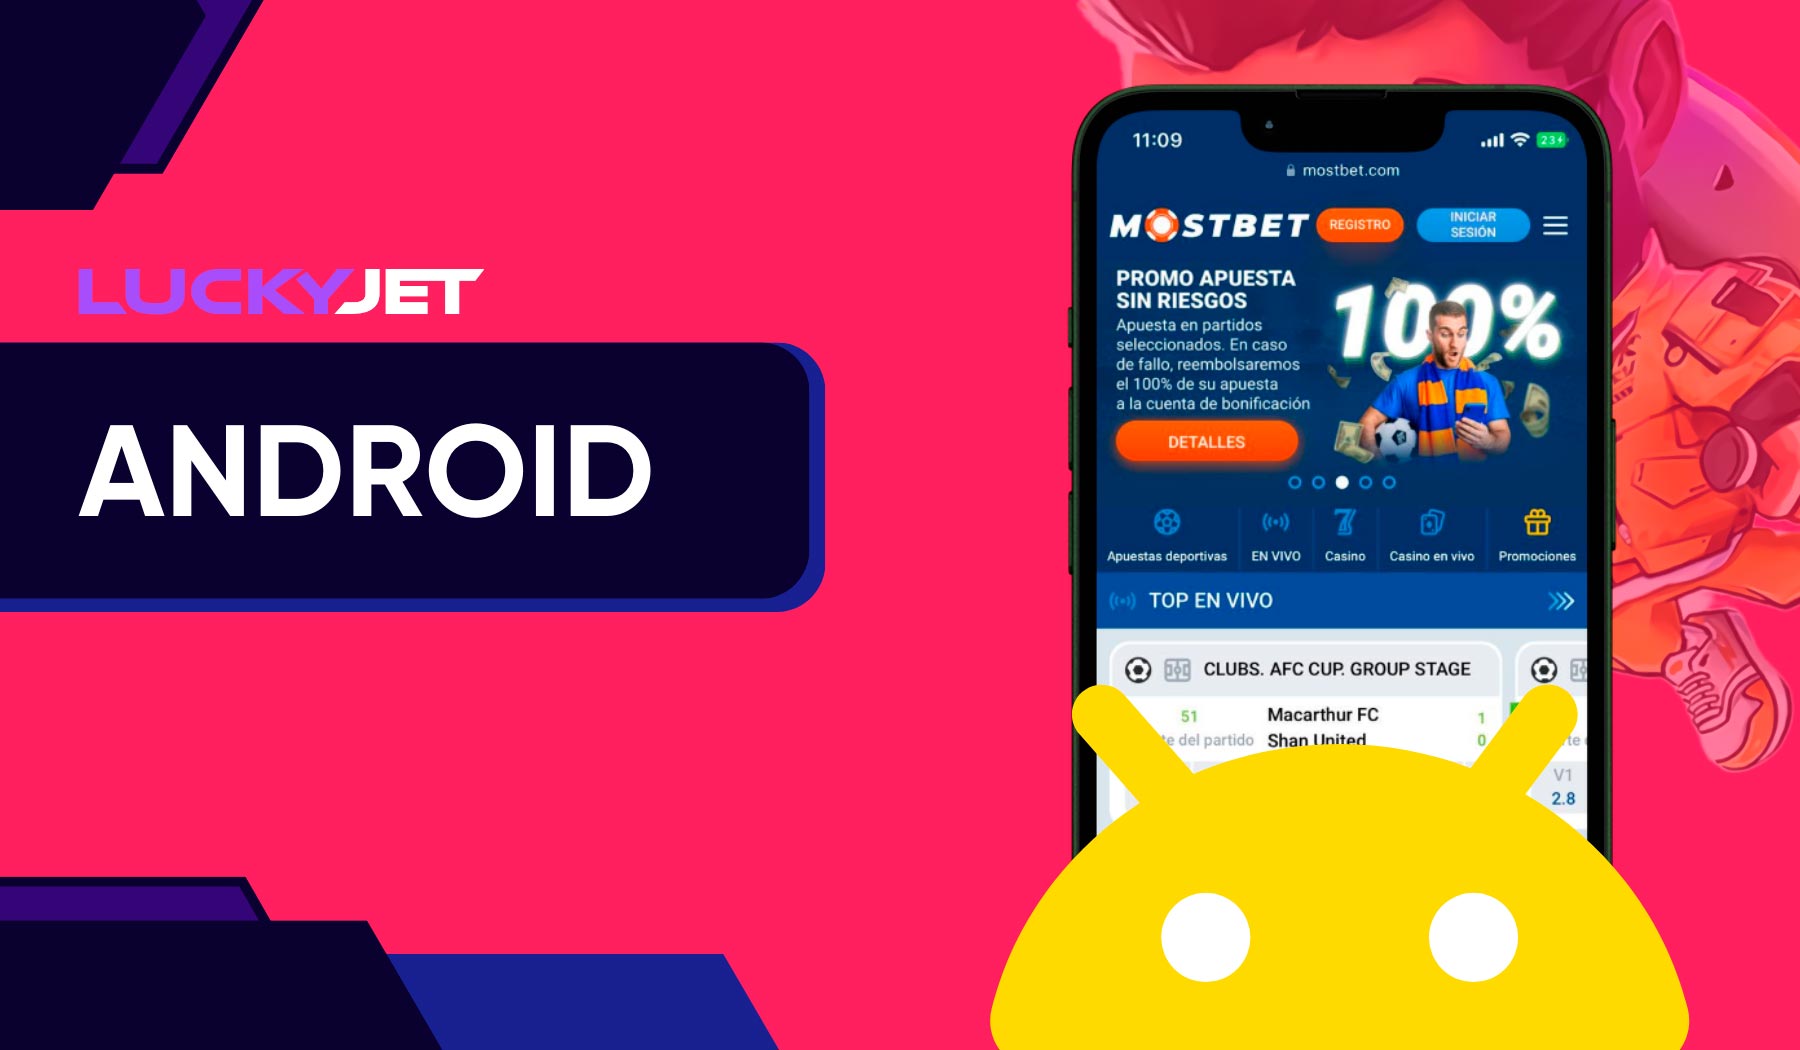 La aplicación Mostbet para Android